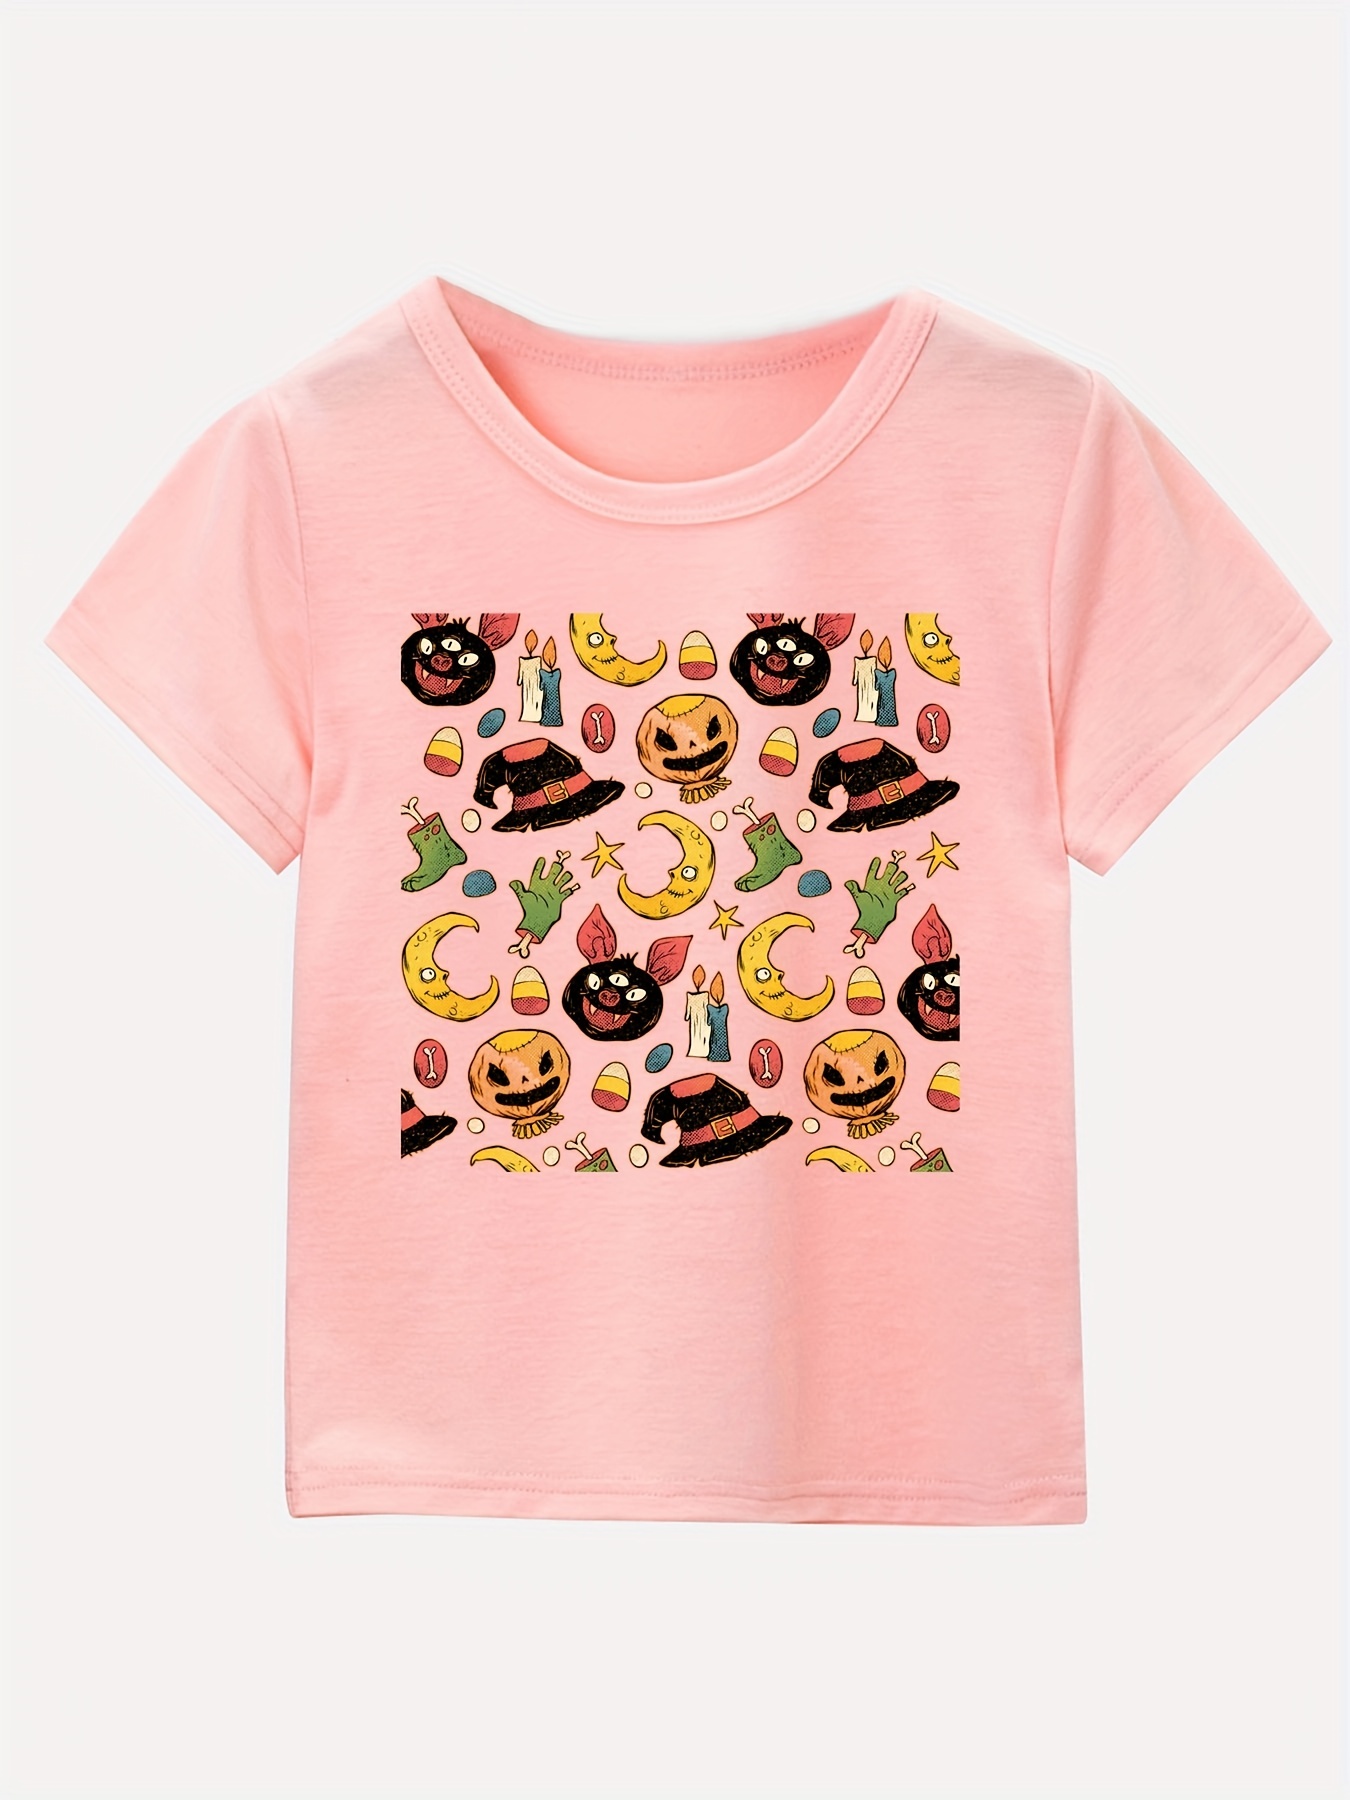 Camiseta gráfica estampada do Dia das Bruxas feminina, camiseta de